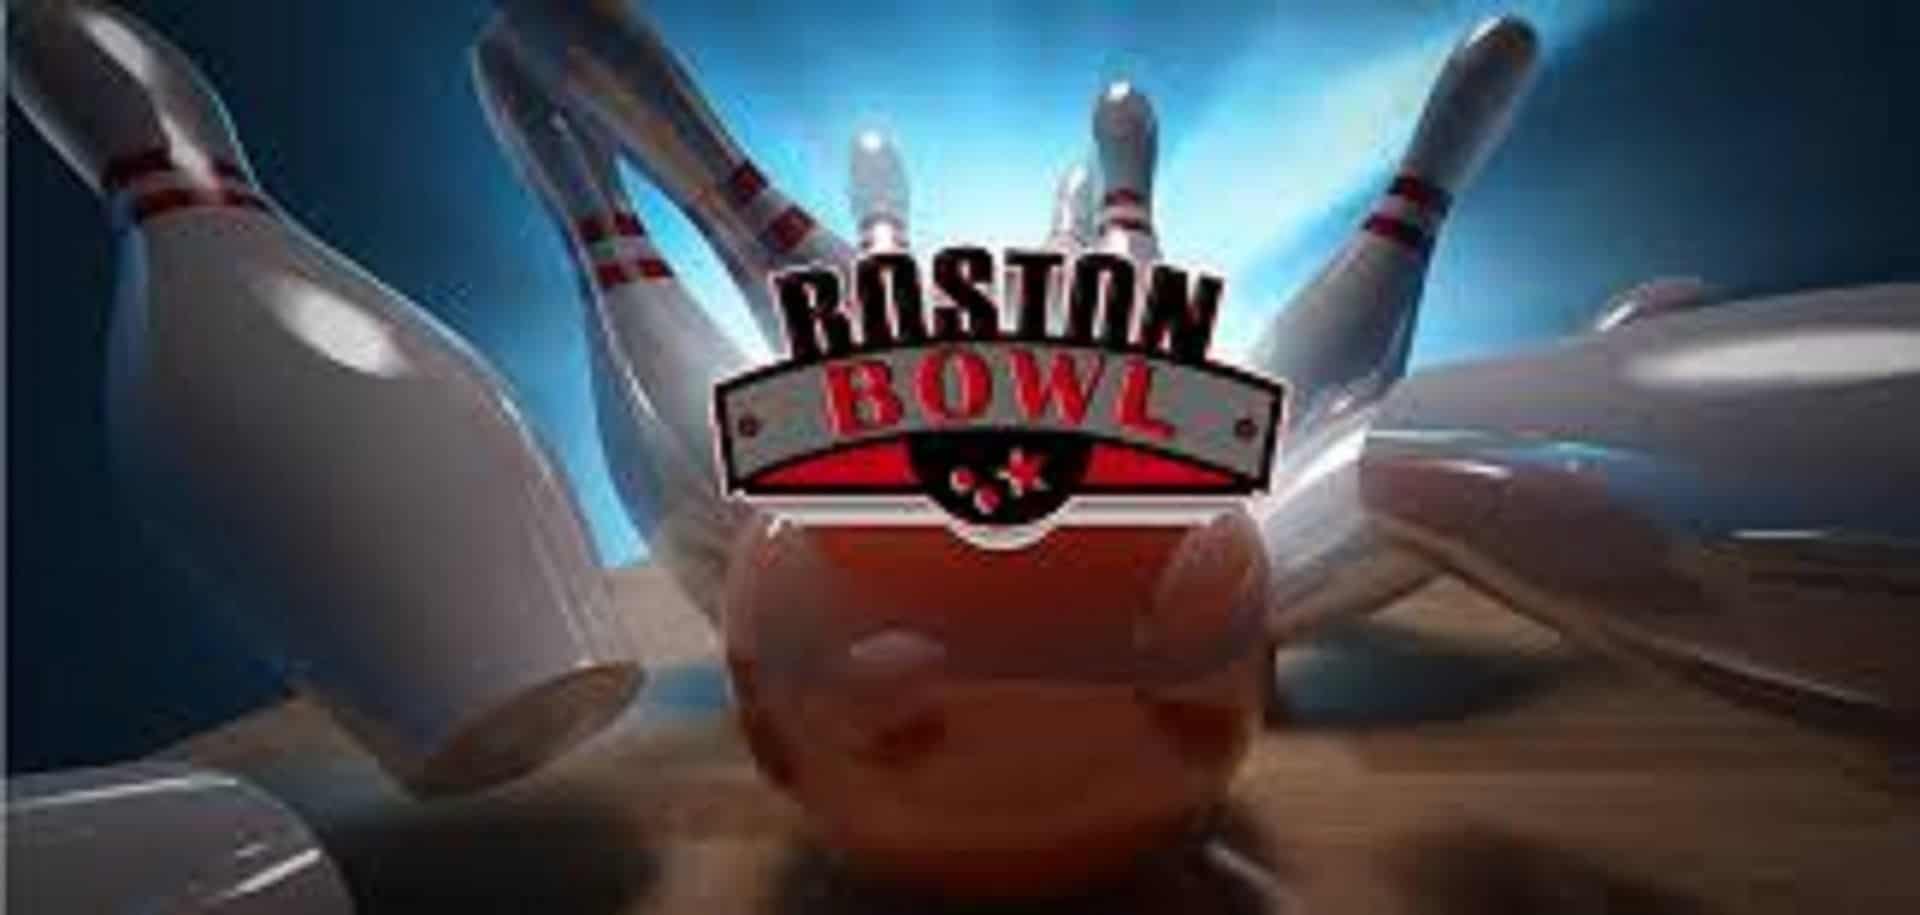 Boston Bowl in UK